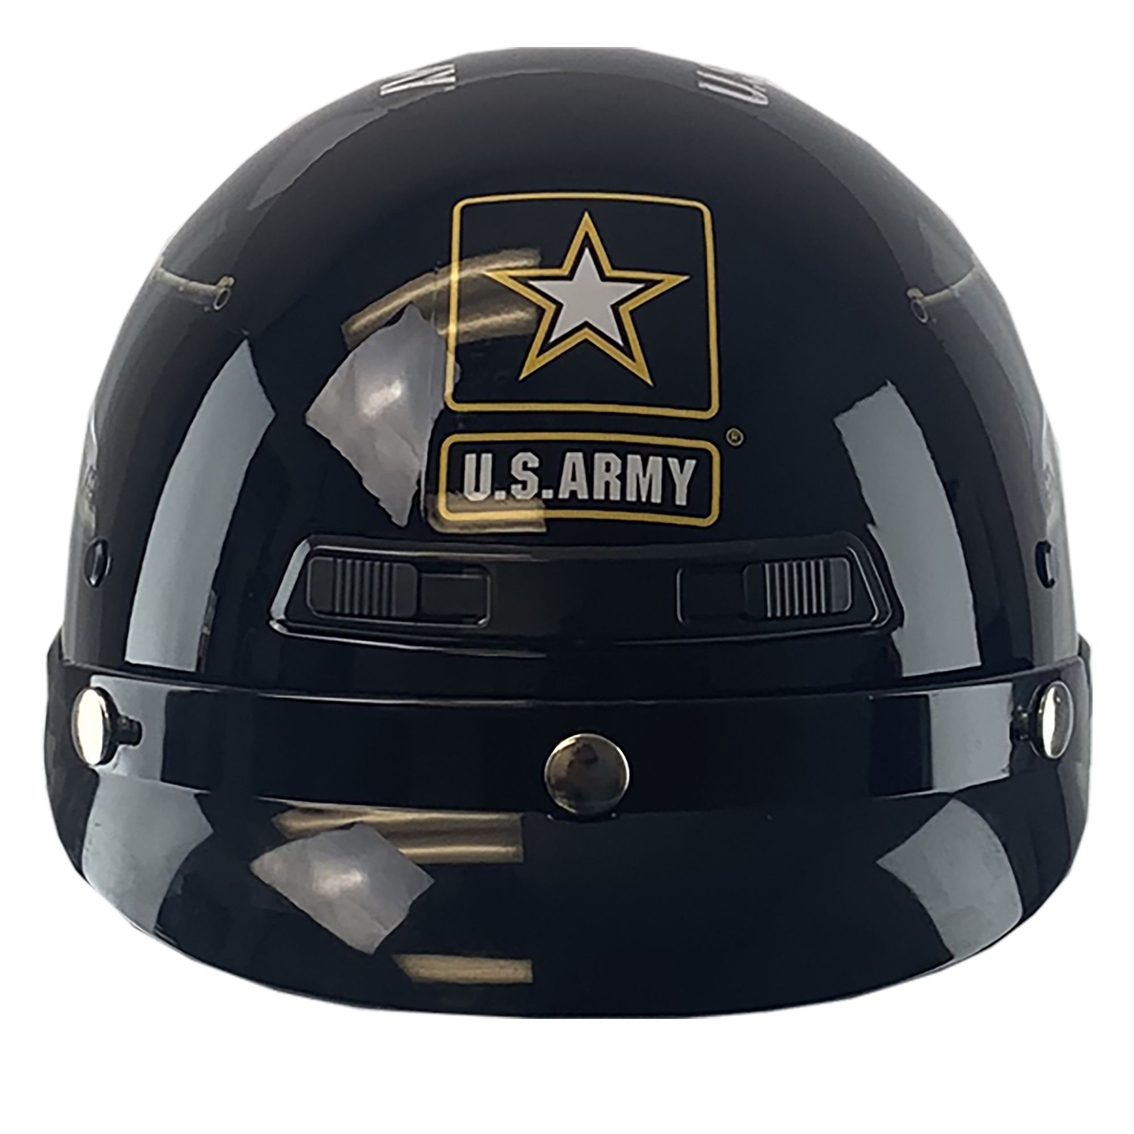 US Army Motorcycle Helmet - Image 2 of 2